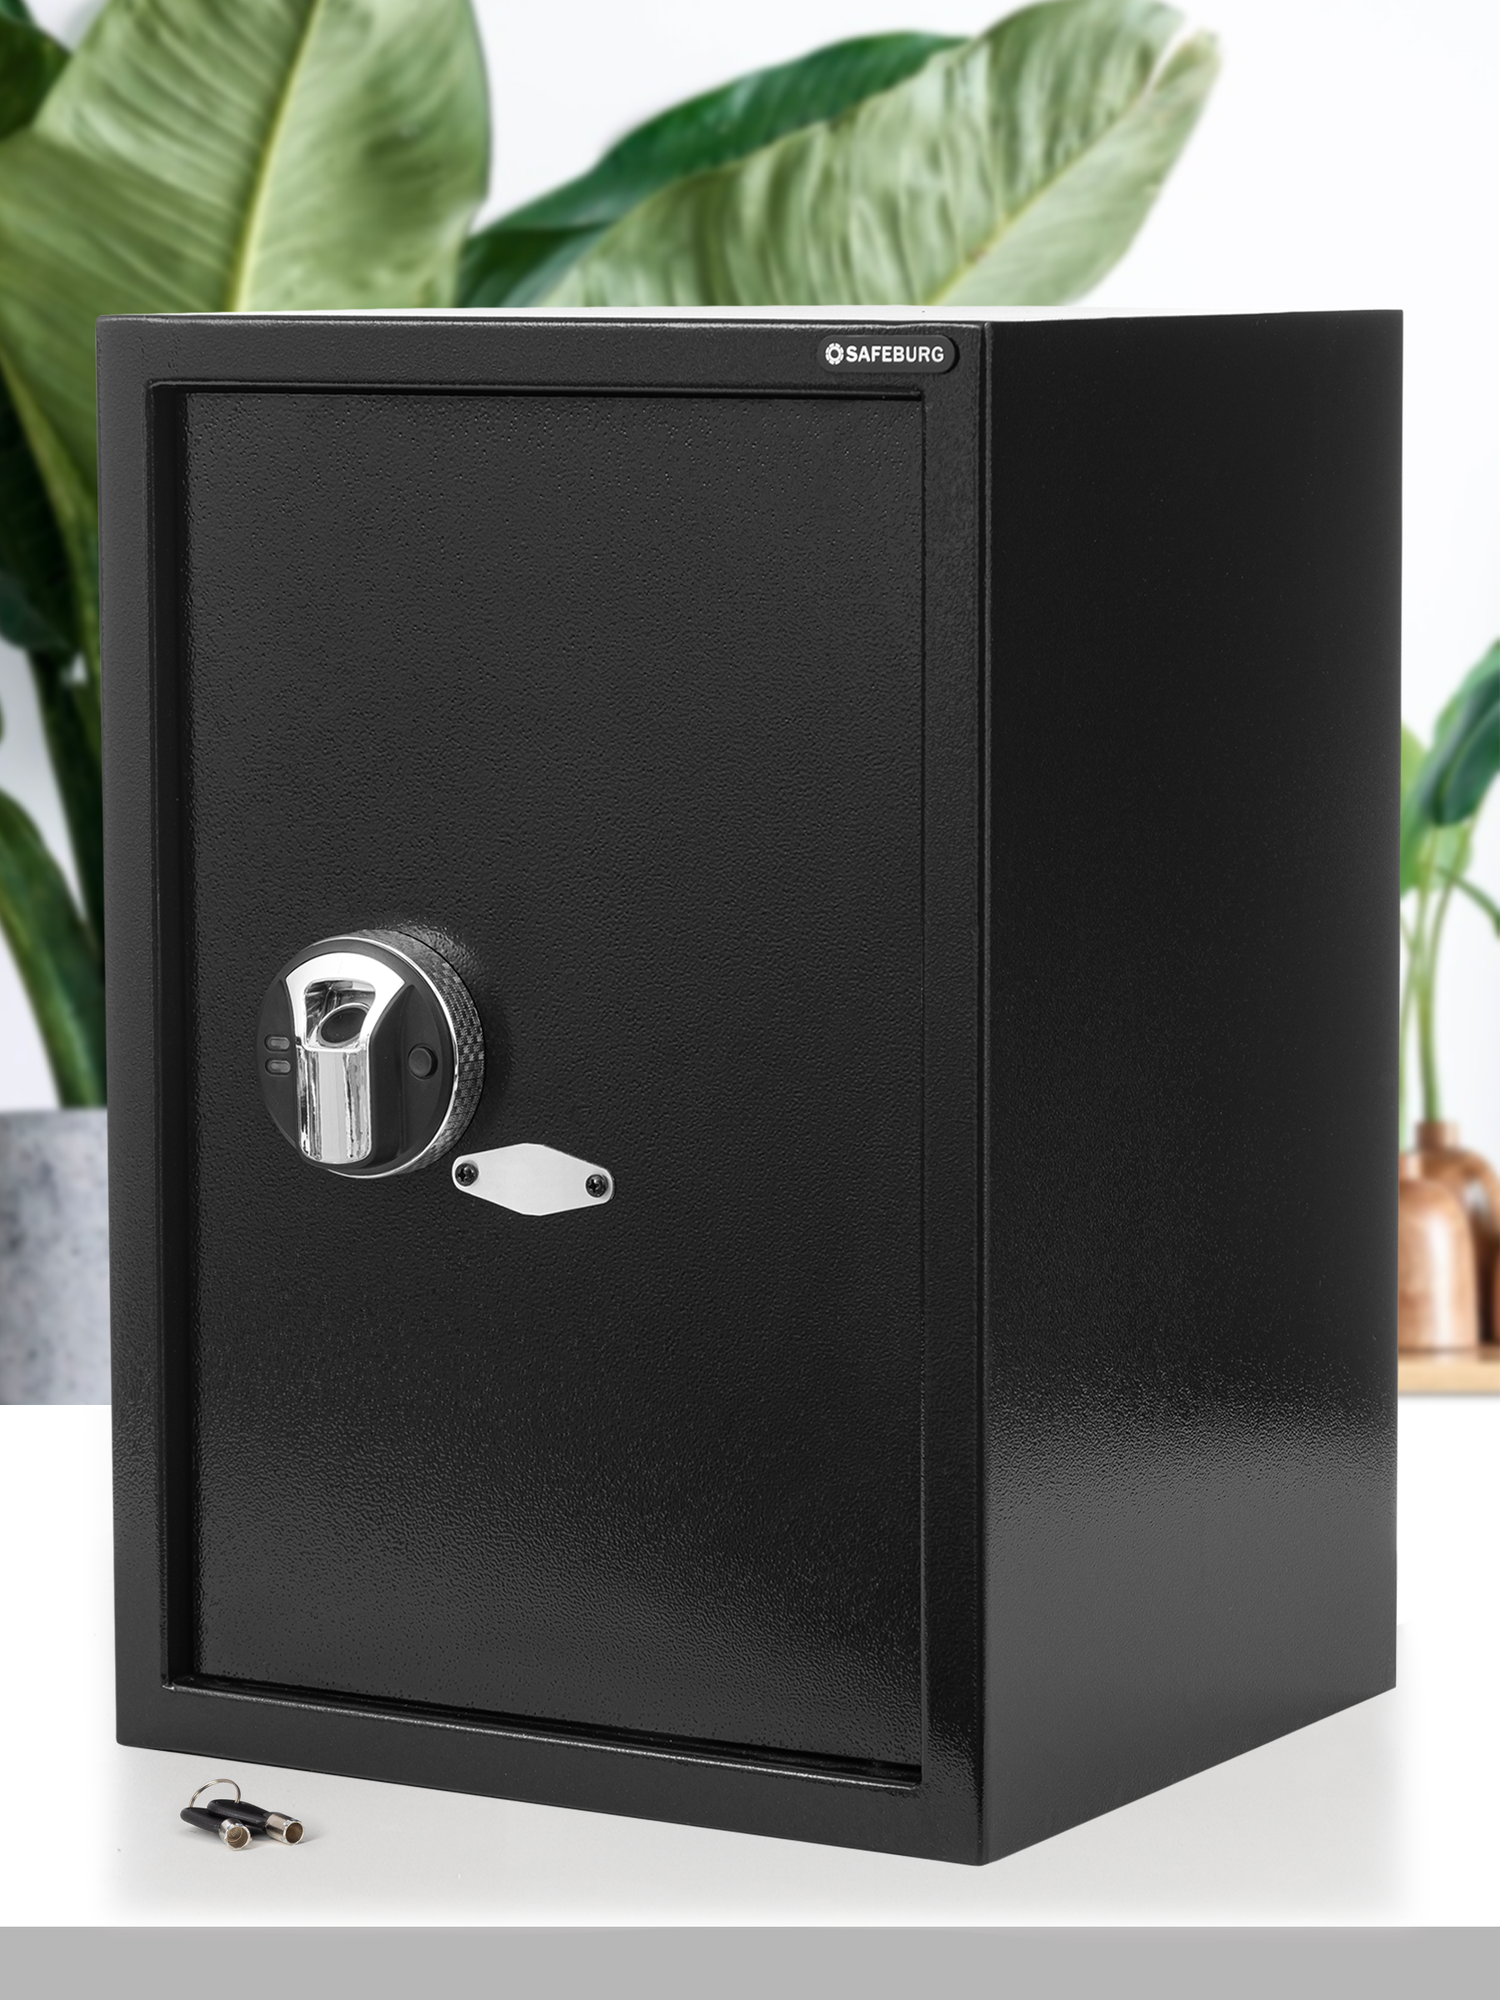 Сейф для денег и документов SAFEBURG SB-500F BLACK сейф мебельный с биометрическим замком (отпечаток пальца), 500х350х310 мм